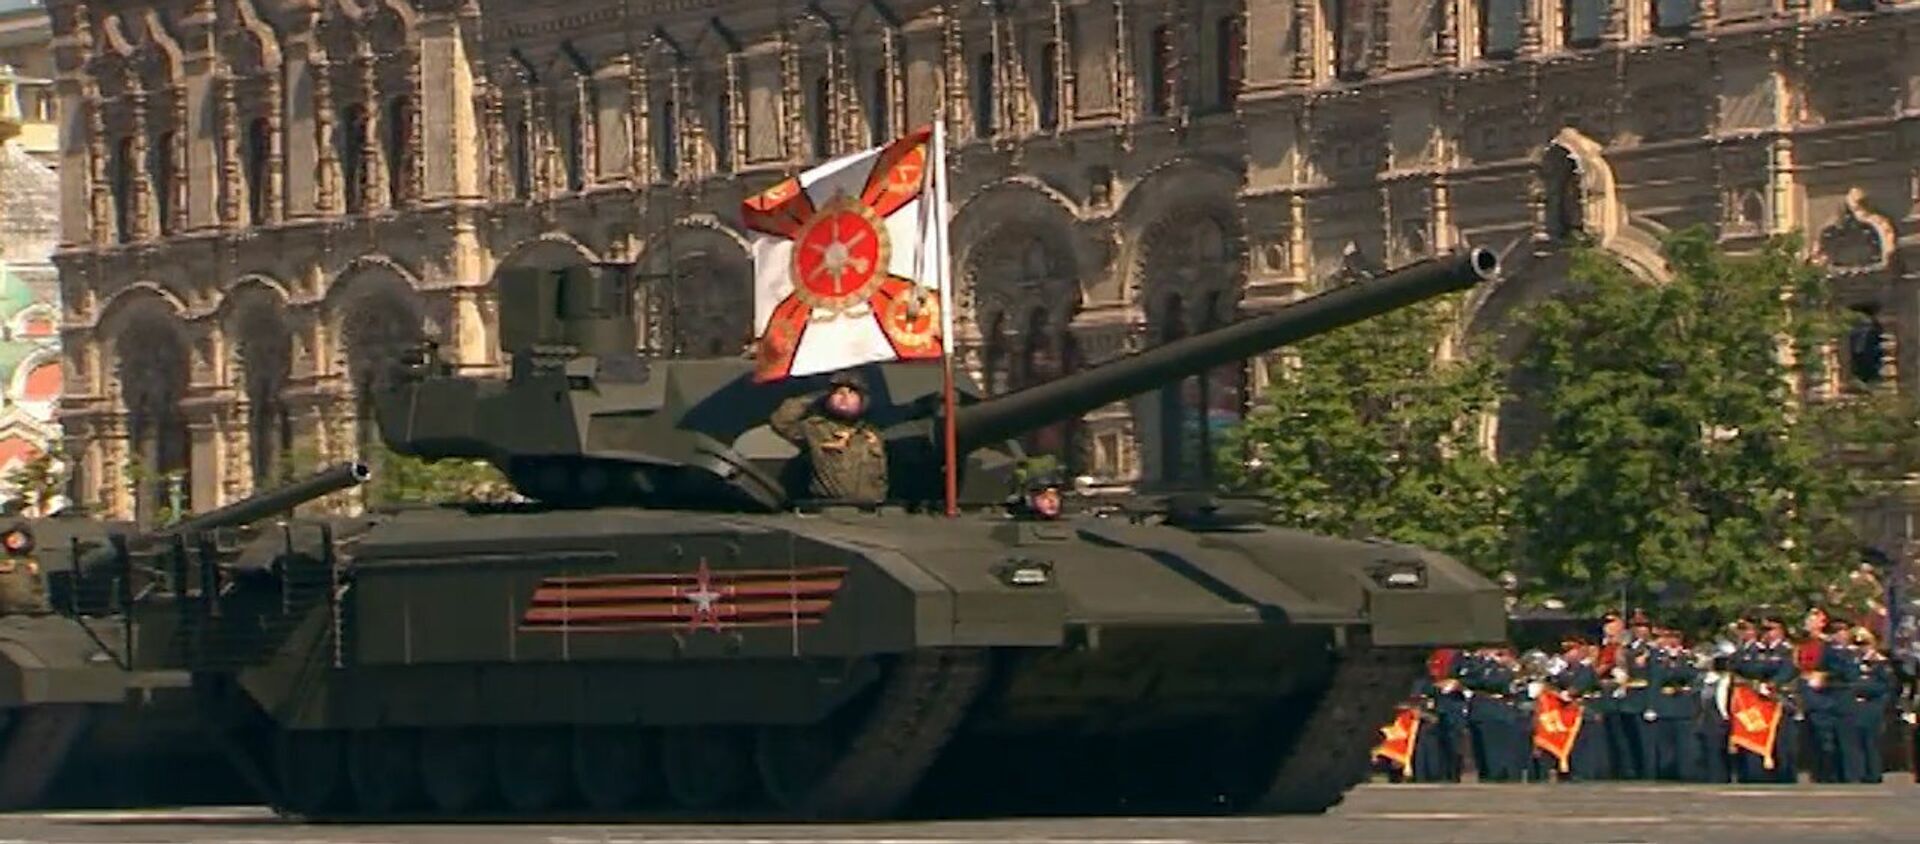 ВИДЕО_Танк Т-14 Армата и другая военная техника на параде Победы в Москве - Sputnik Молдова, 1920, 09.05.2016